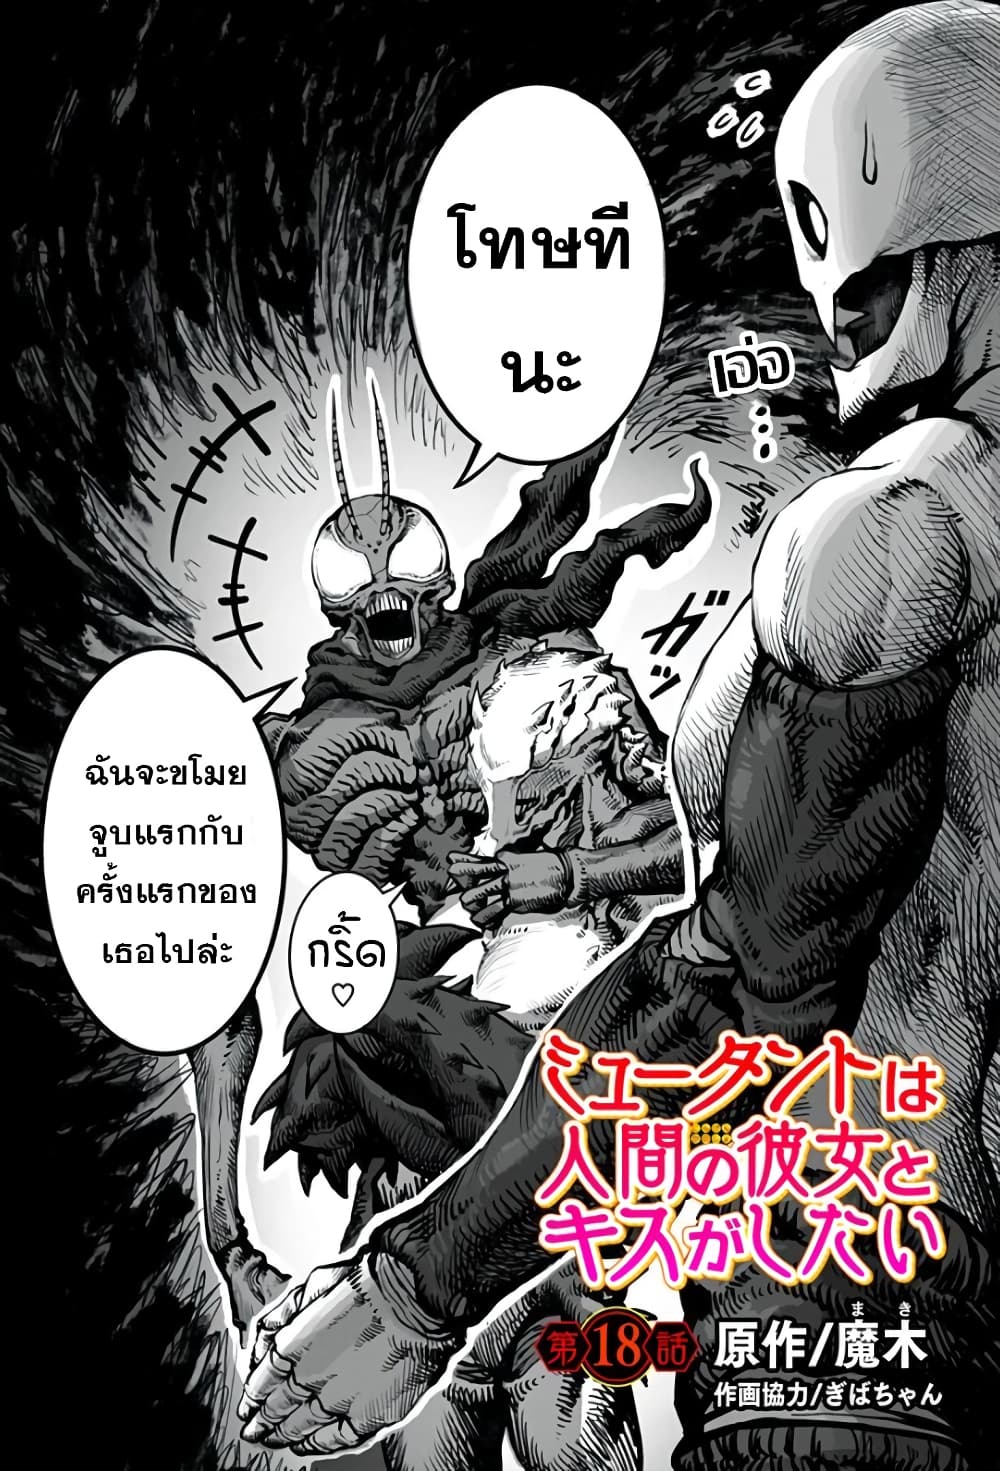 Mutant wa ningen no kanojo to kisu ga shitai 18 (1)